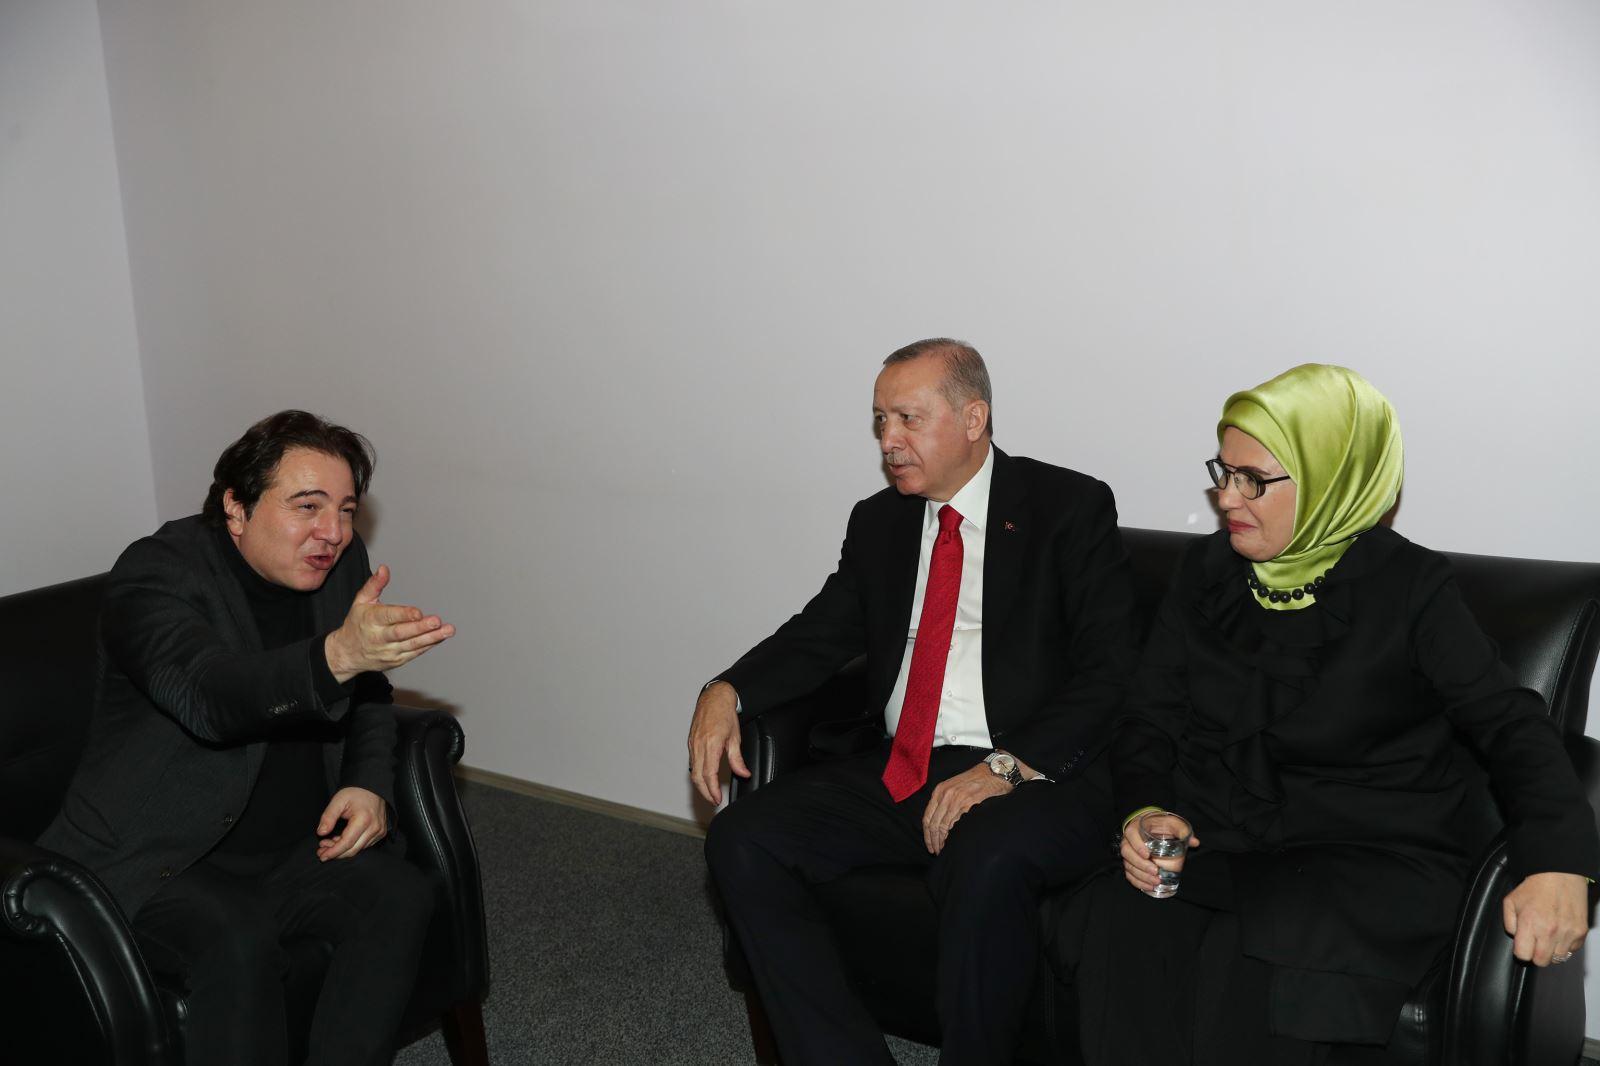 Cumhurbaşkanı Erdoğan, konser sonrası Fazıl Say ile sohbet etti.